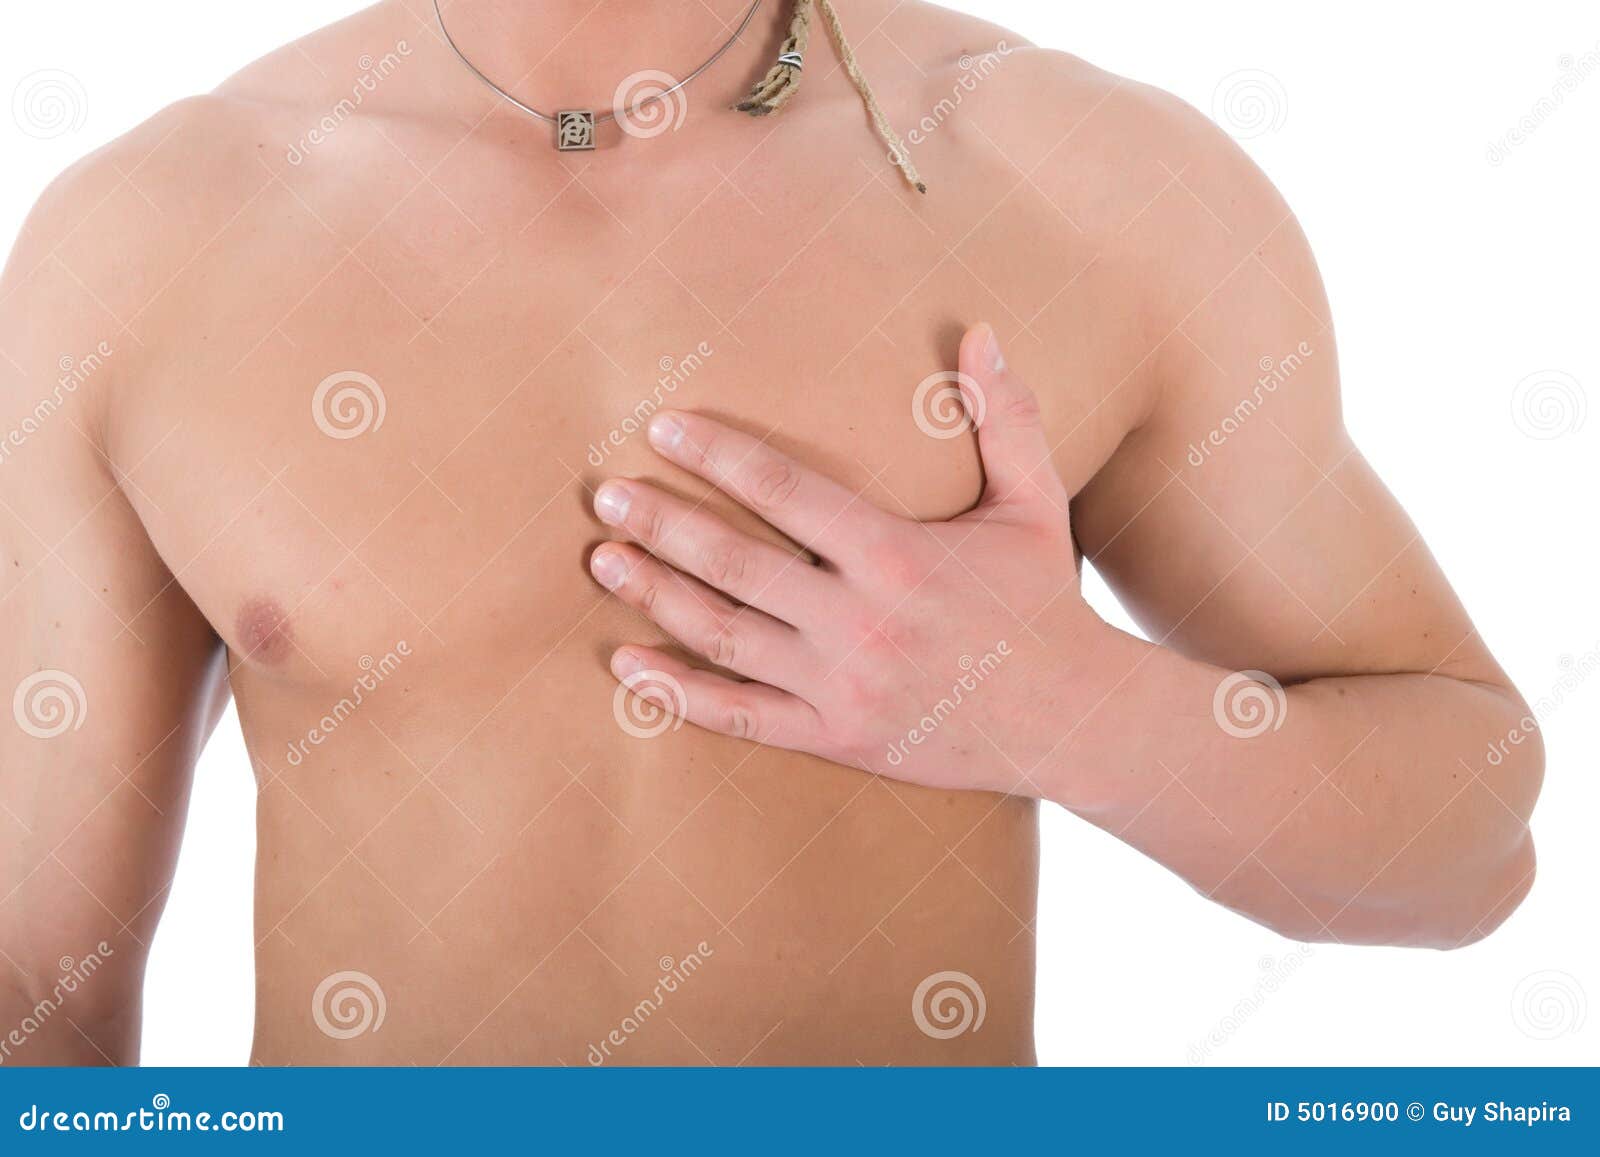 шишка между грудей у мужчин фото 19